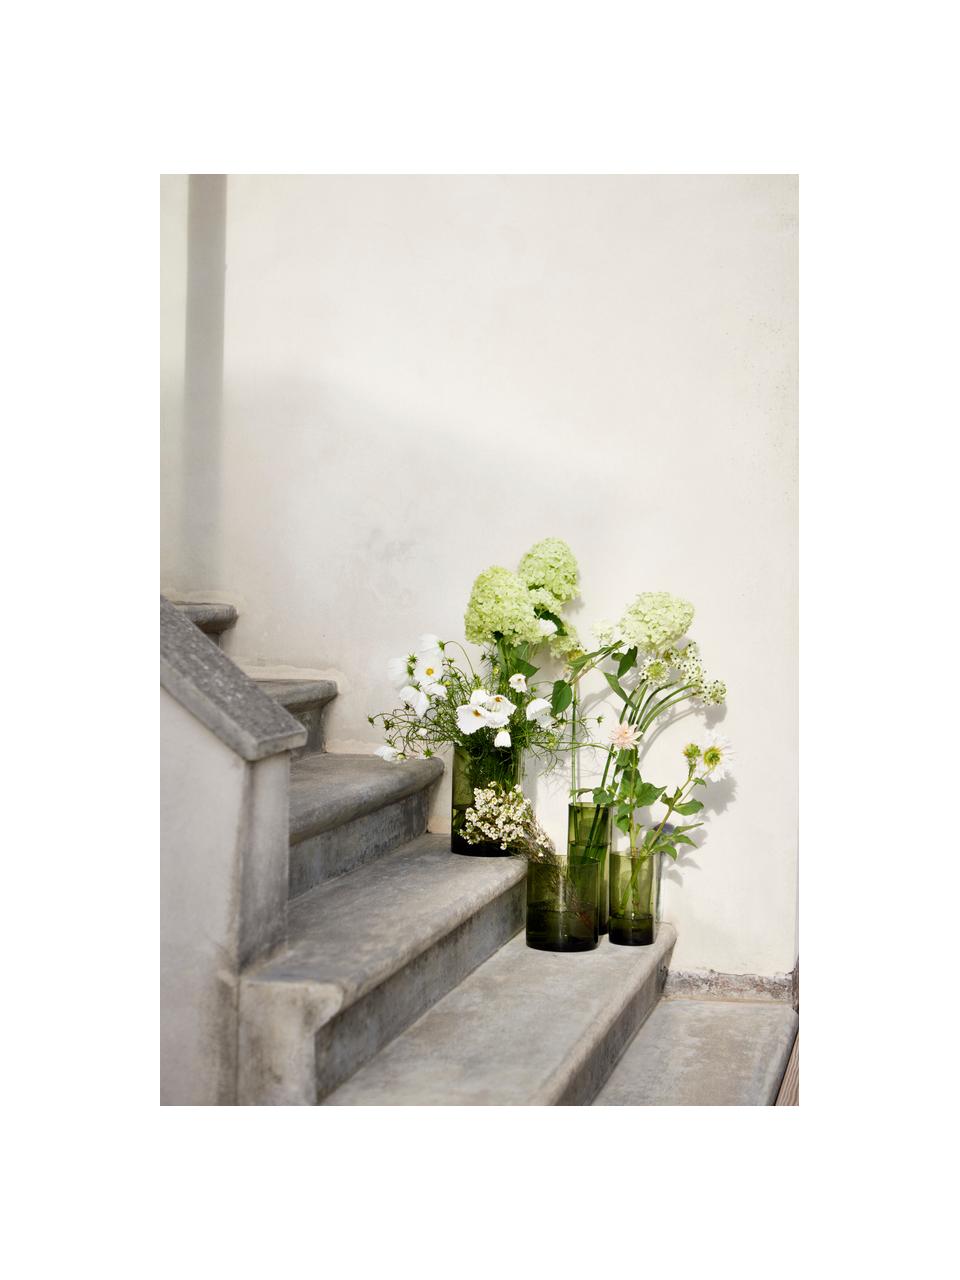 Vase en verre Salon, haut. 21 cm, Verre, Tons verts, translucide, Ø 11 x haut. 21 cm